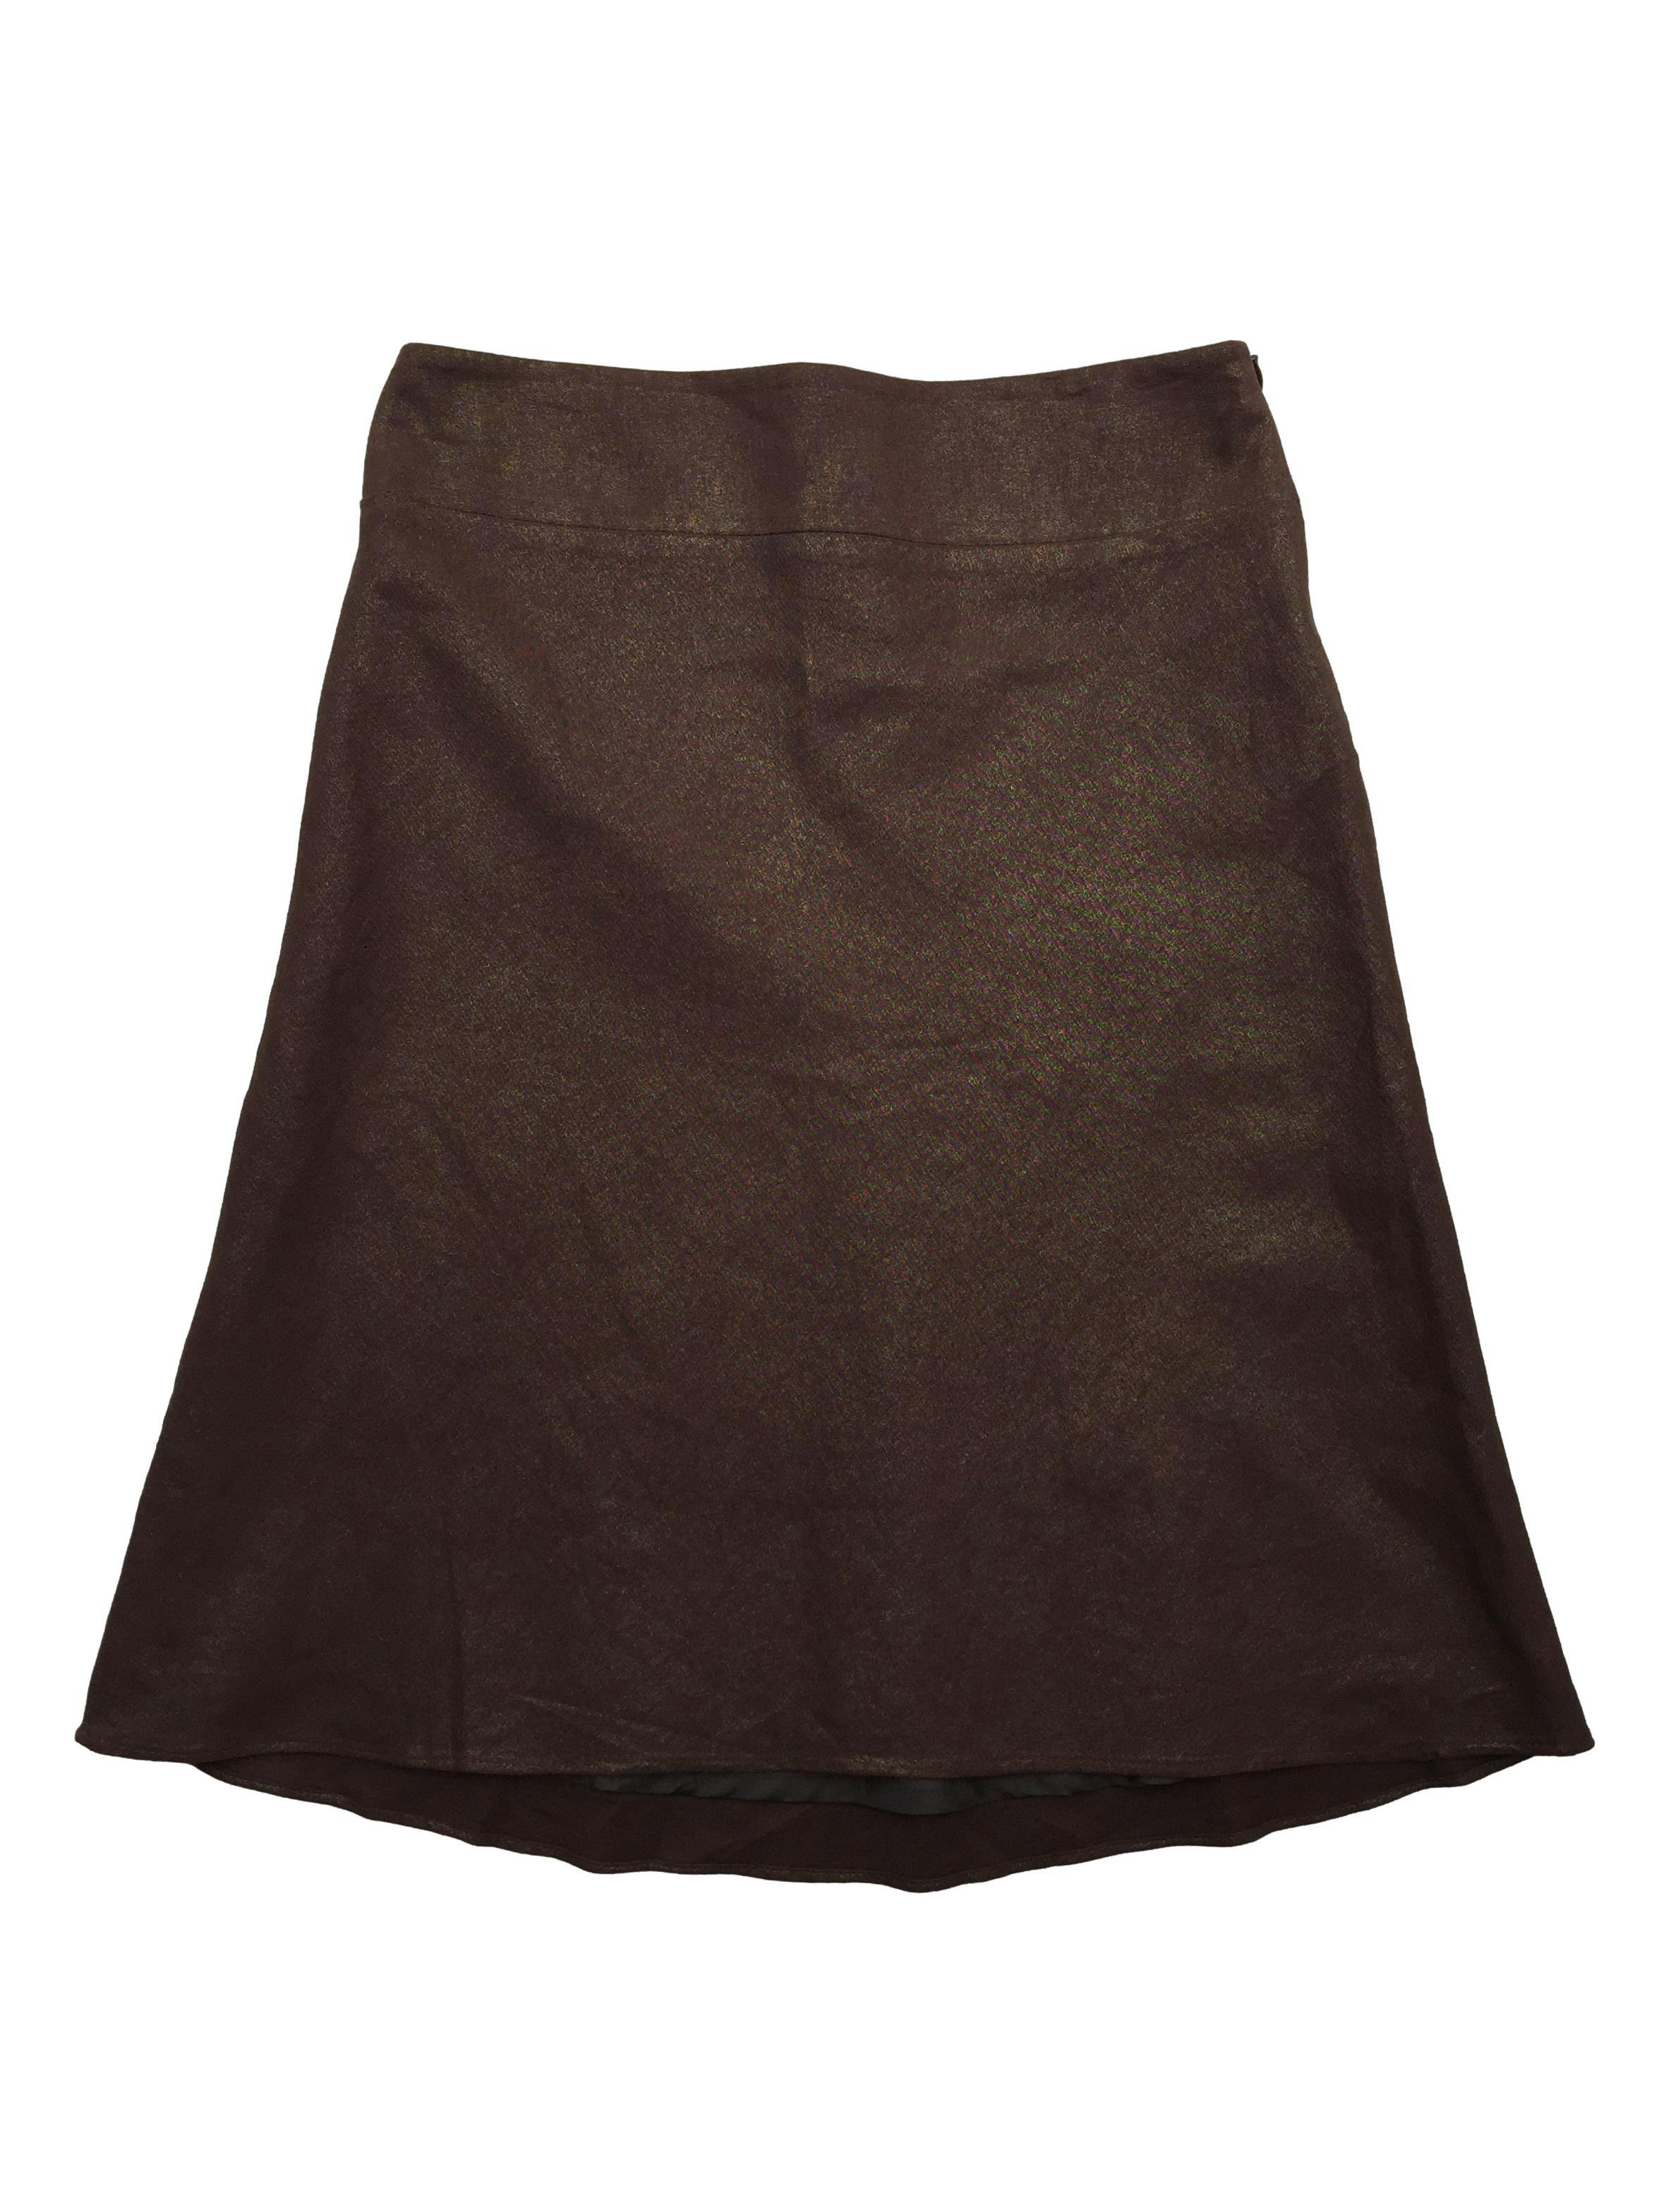 Falda sastre Mae Alcott 55%lino marrón con hilos metálicos, forro y cierre lateral. Cintura 80cm, Largo 62cm.